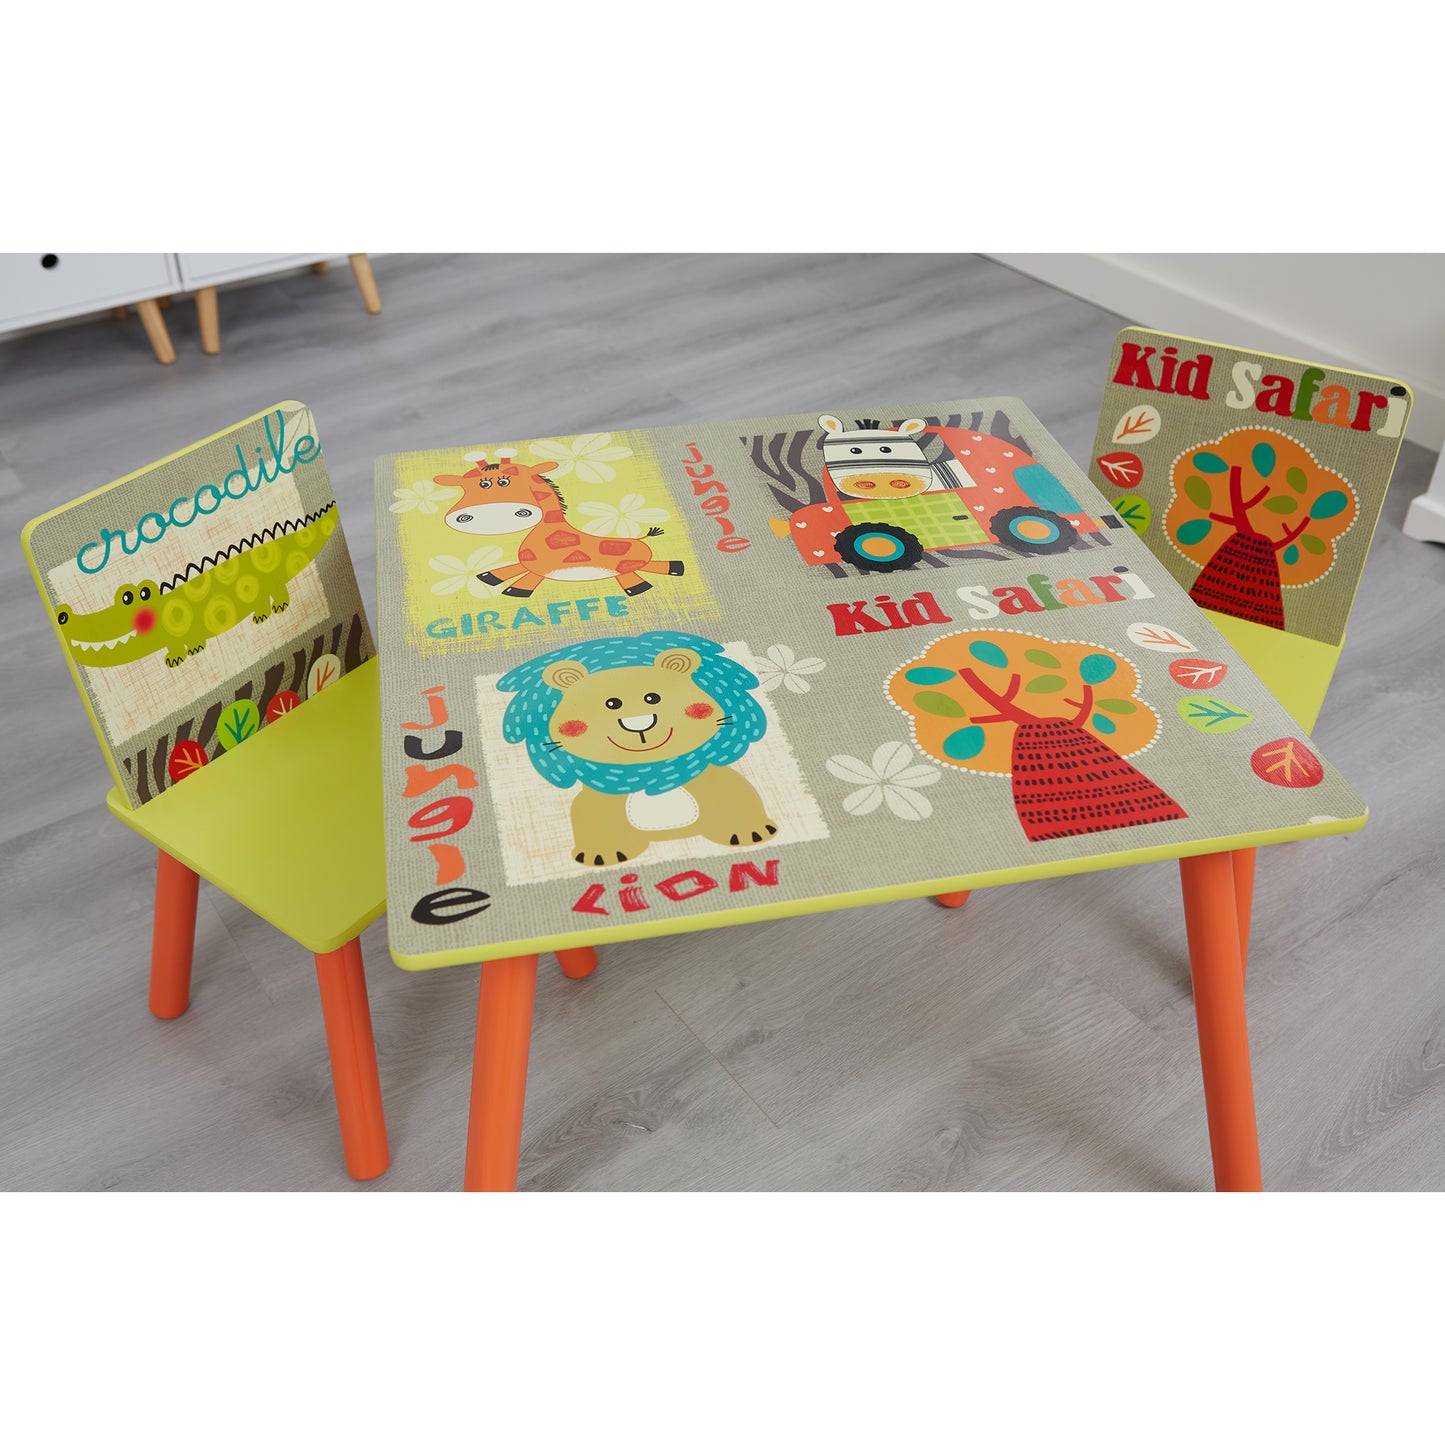 Kid Safari Table and Chair Set